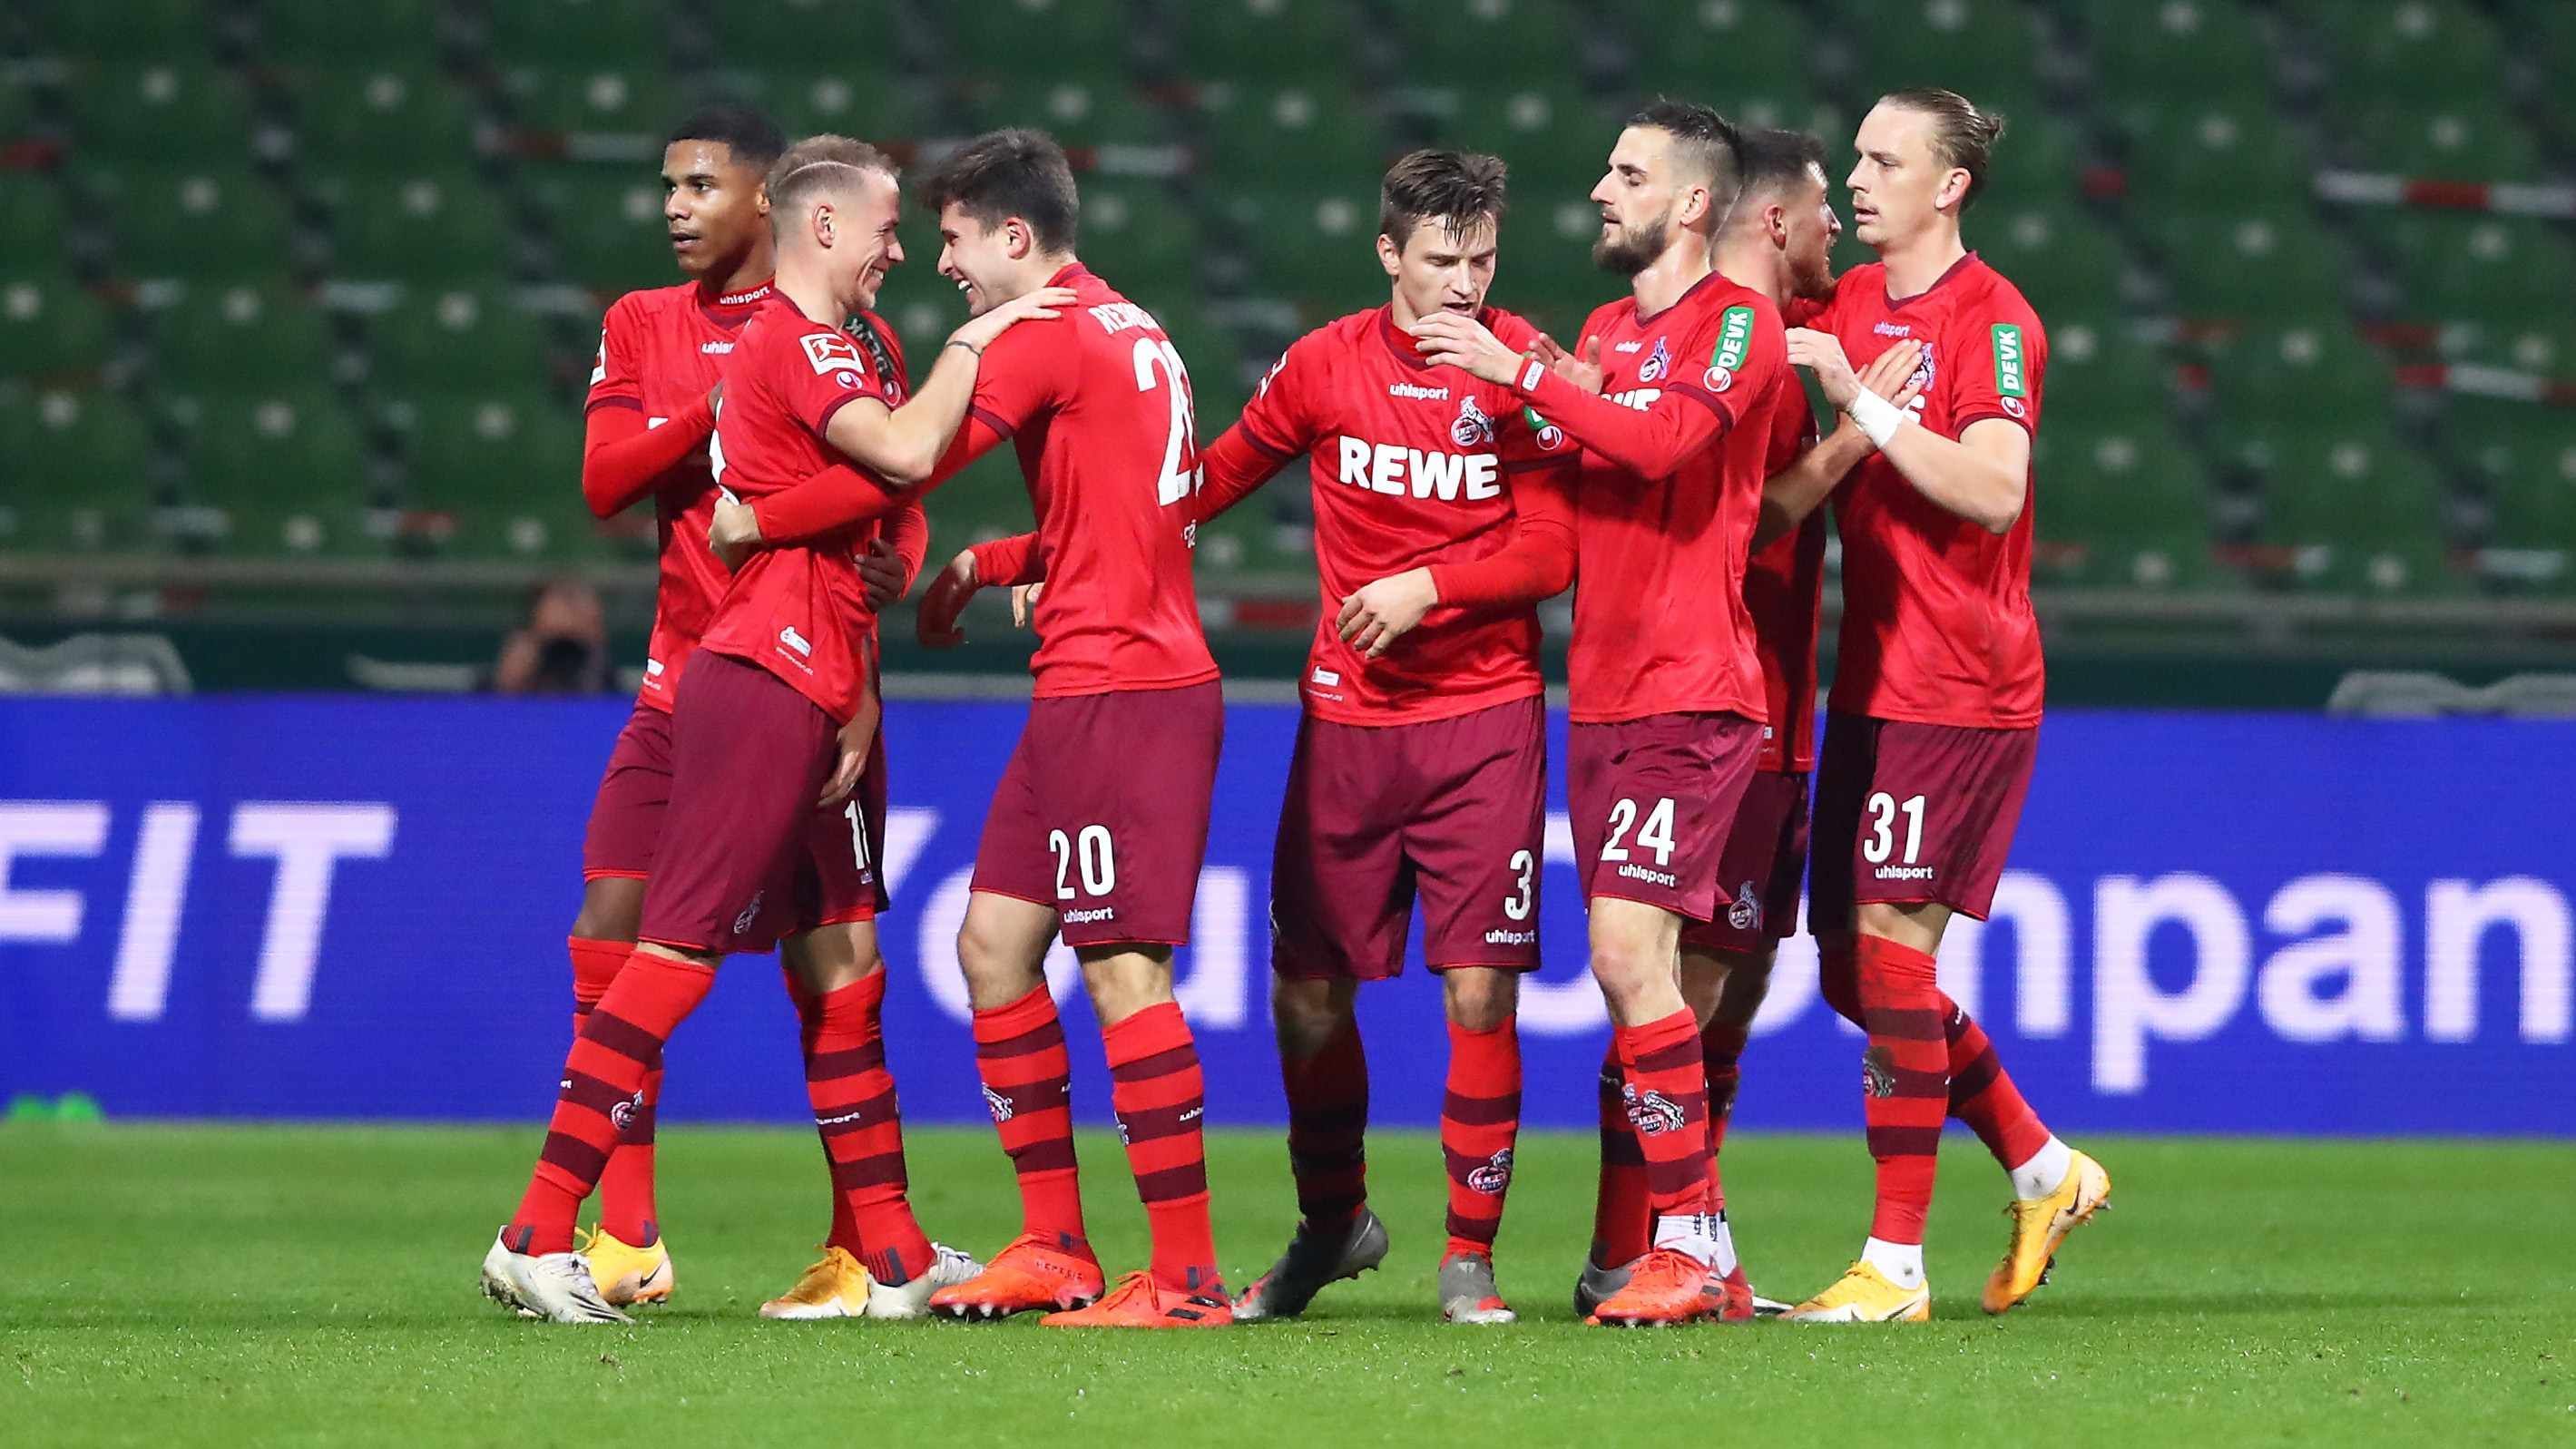 
                <strong>Platz 4: 1. FC Köln - Durchschnittlicher Tabellenplatz der Gegner: 6,3</strong><br>
                
              